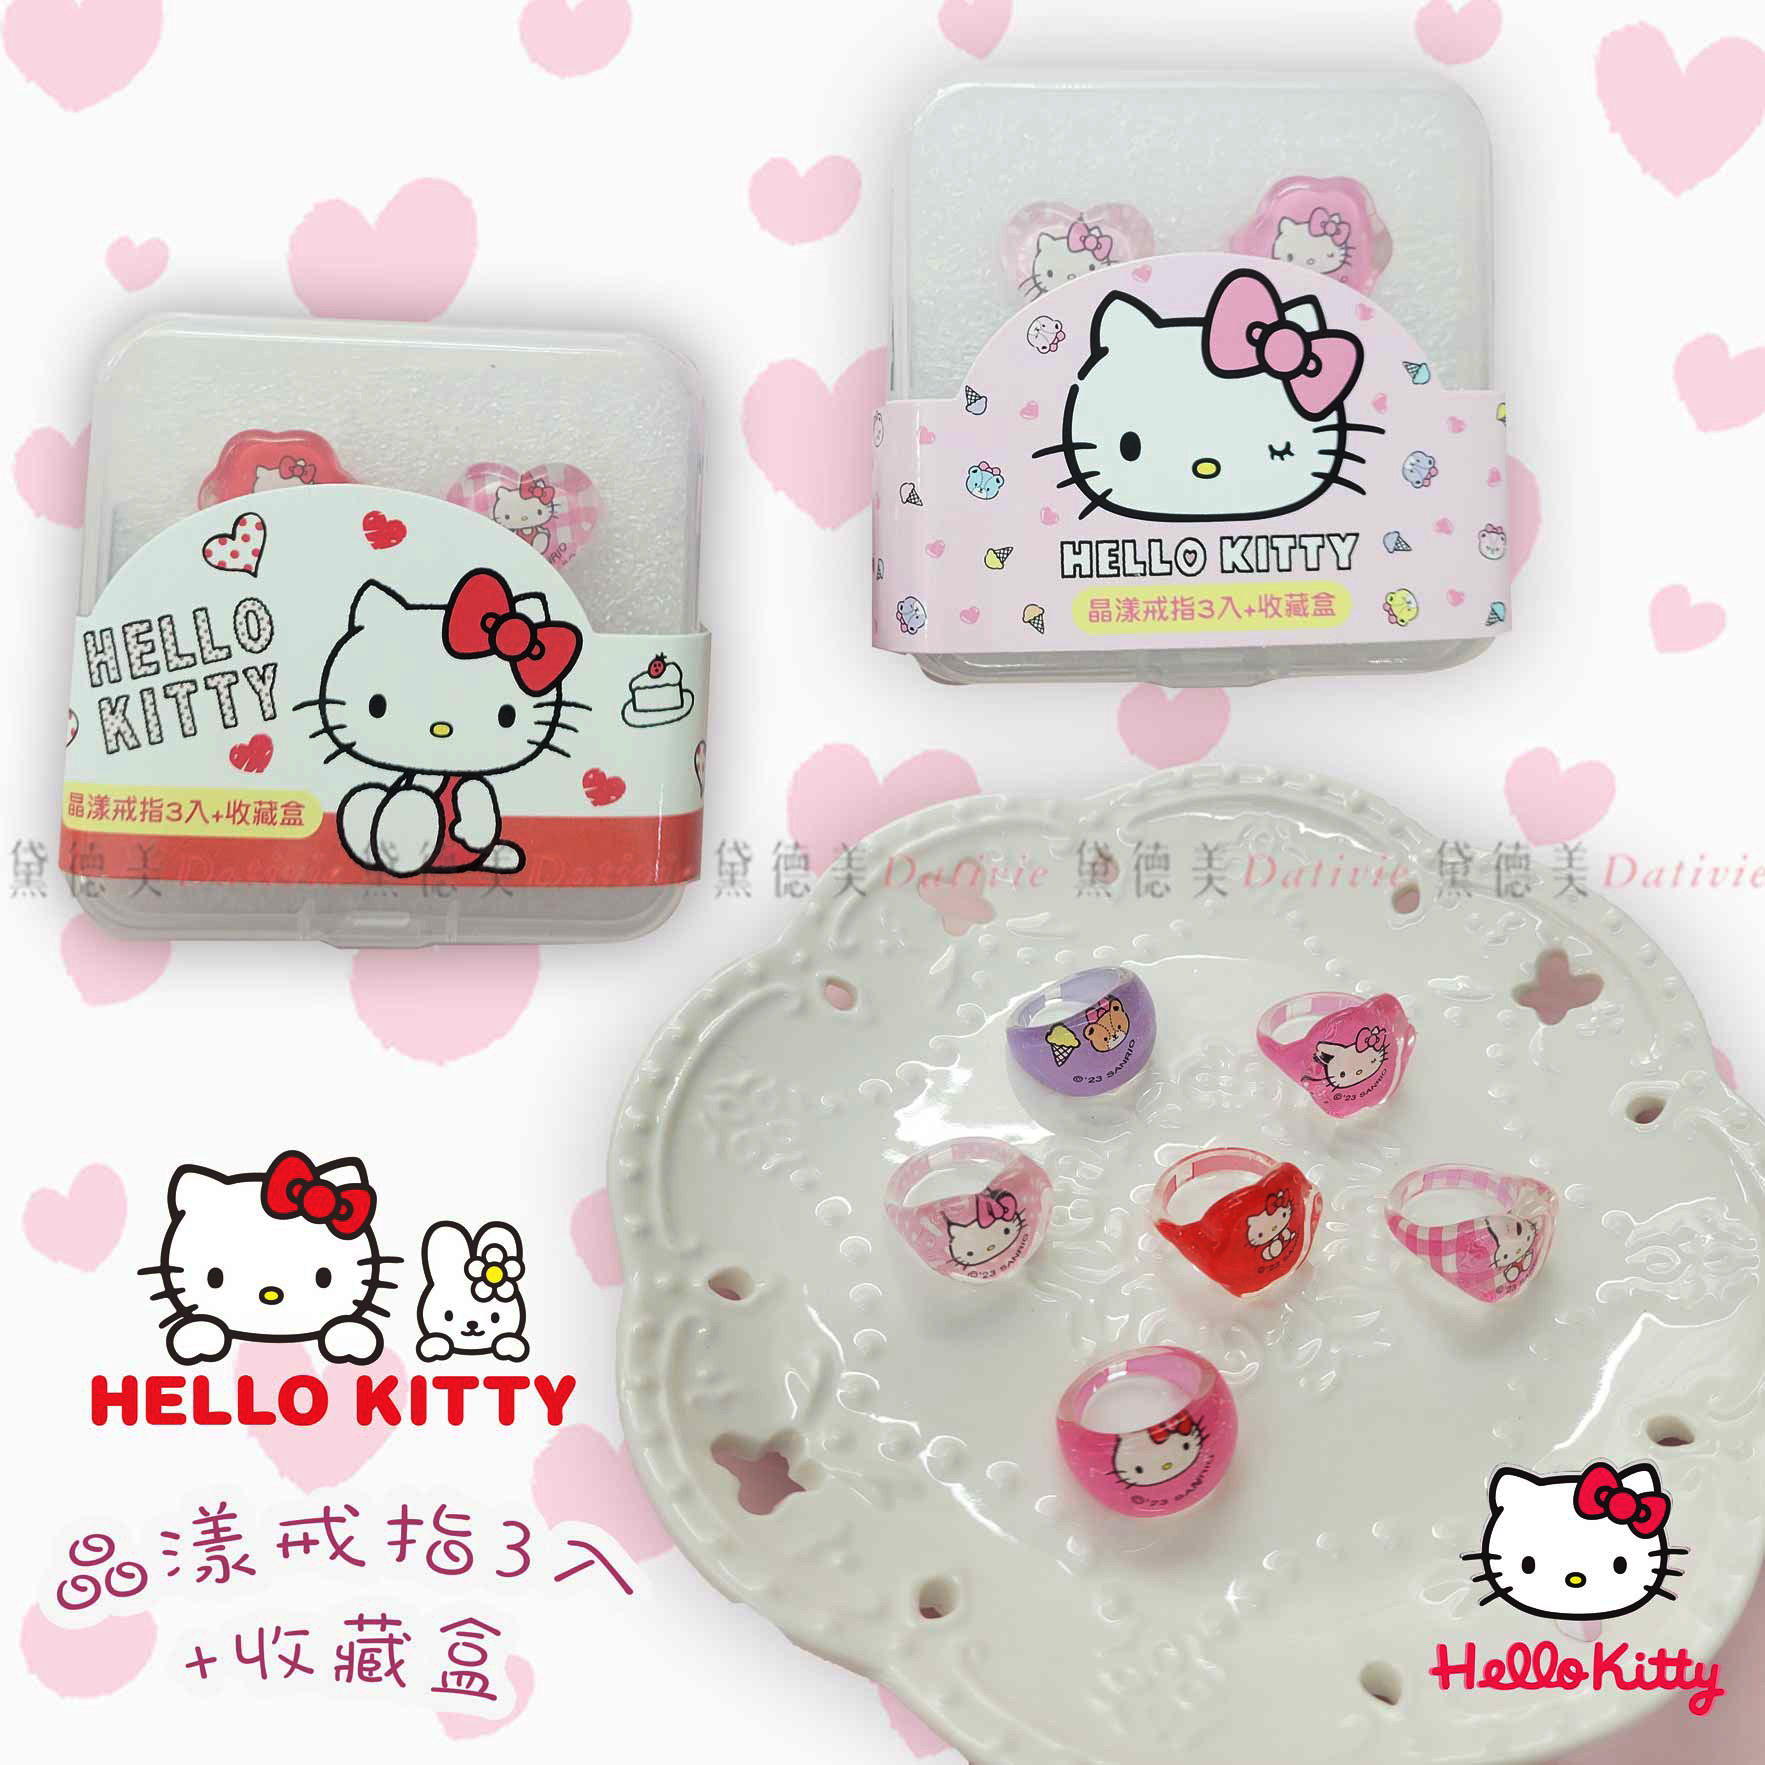 晶漾戒指3入+收藏盒-HELLO KITTY 三麗鷗 Sanrio 正版授權